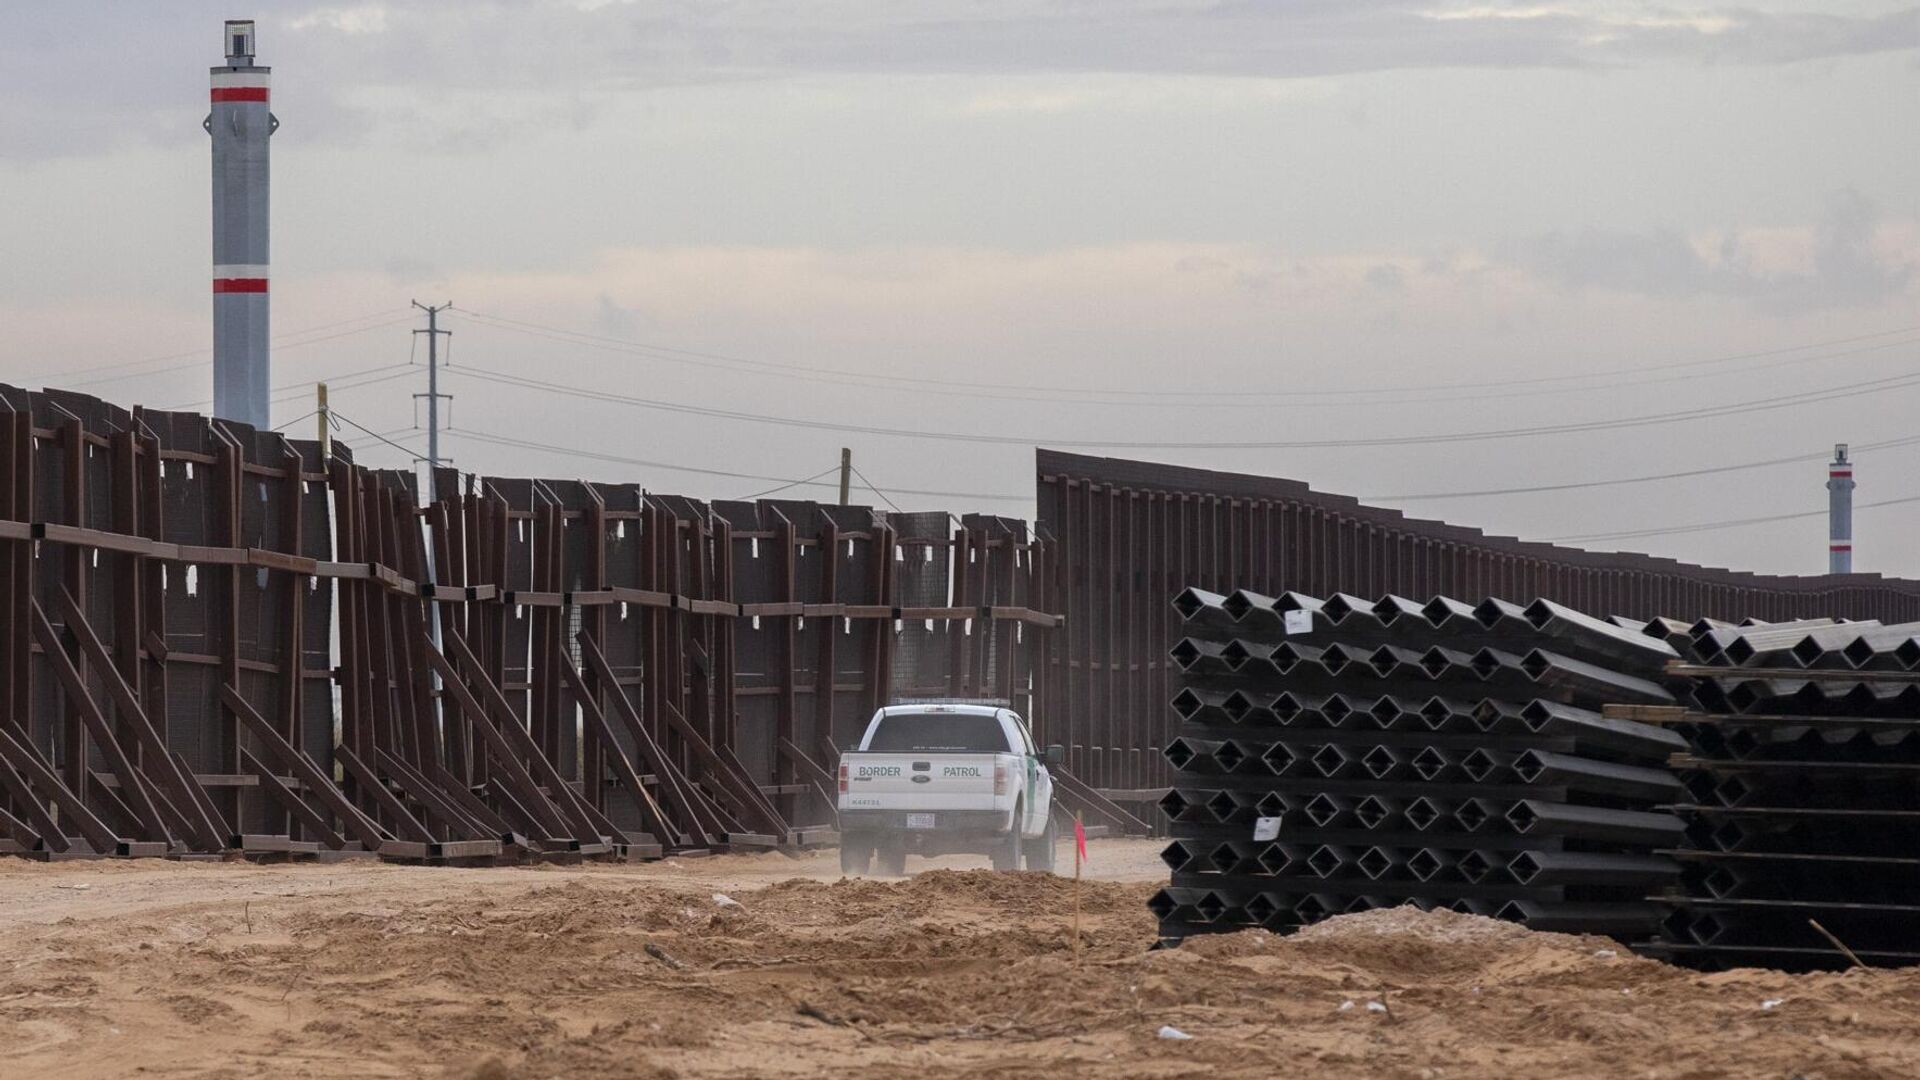 Машина пограничного патруля США едет вдоль конструкций недостроенной стены на границе между США и Мексикой  - РИА Новости, 1920, 11.02.2021